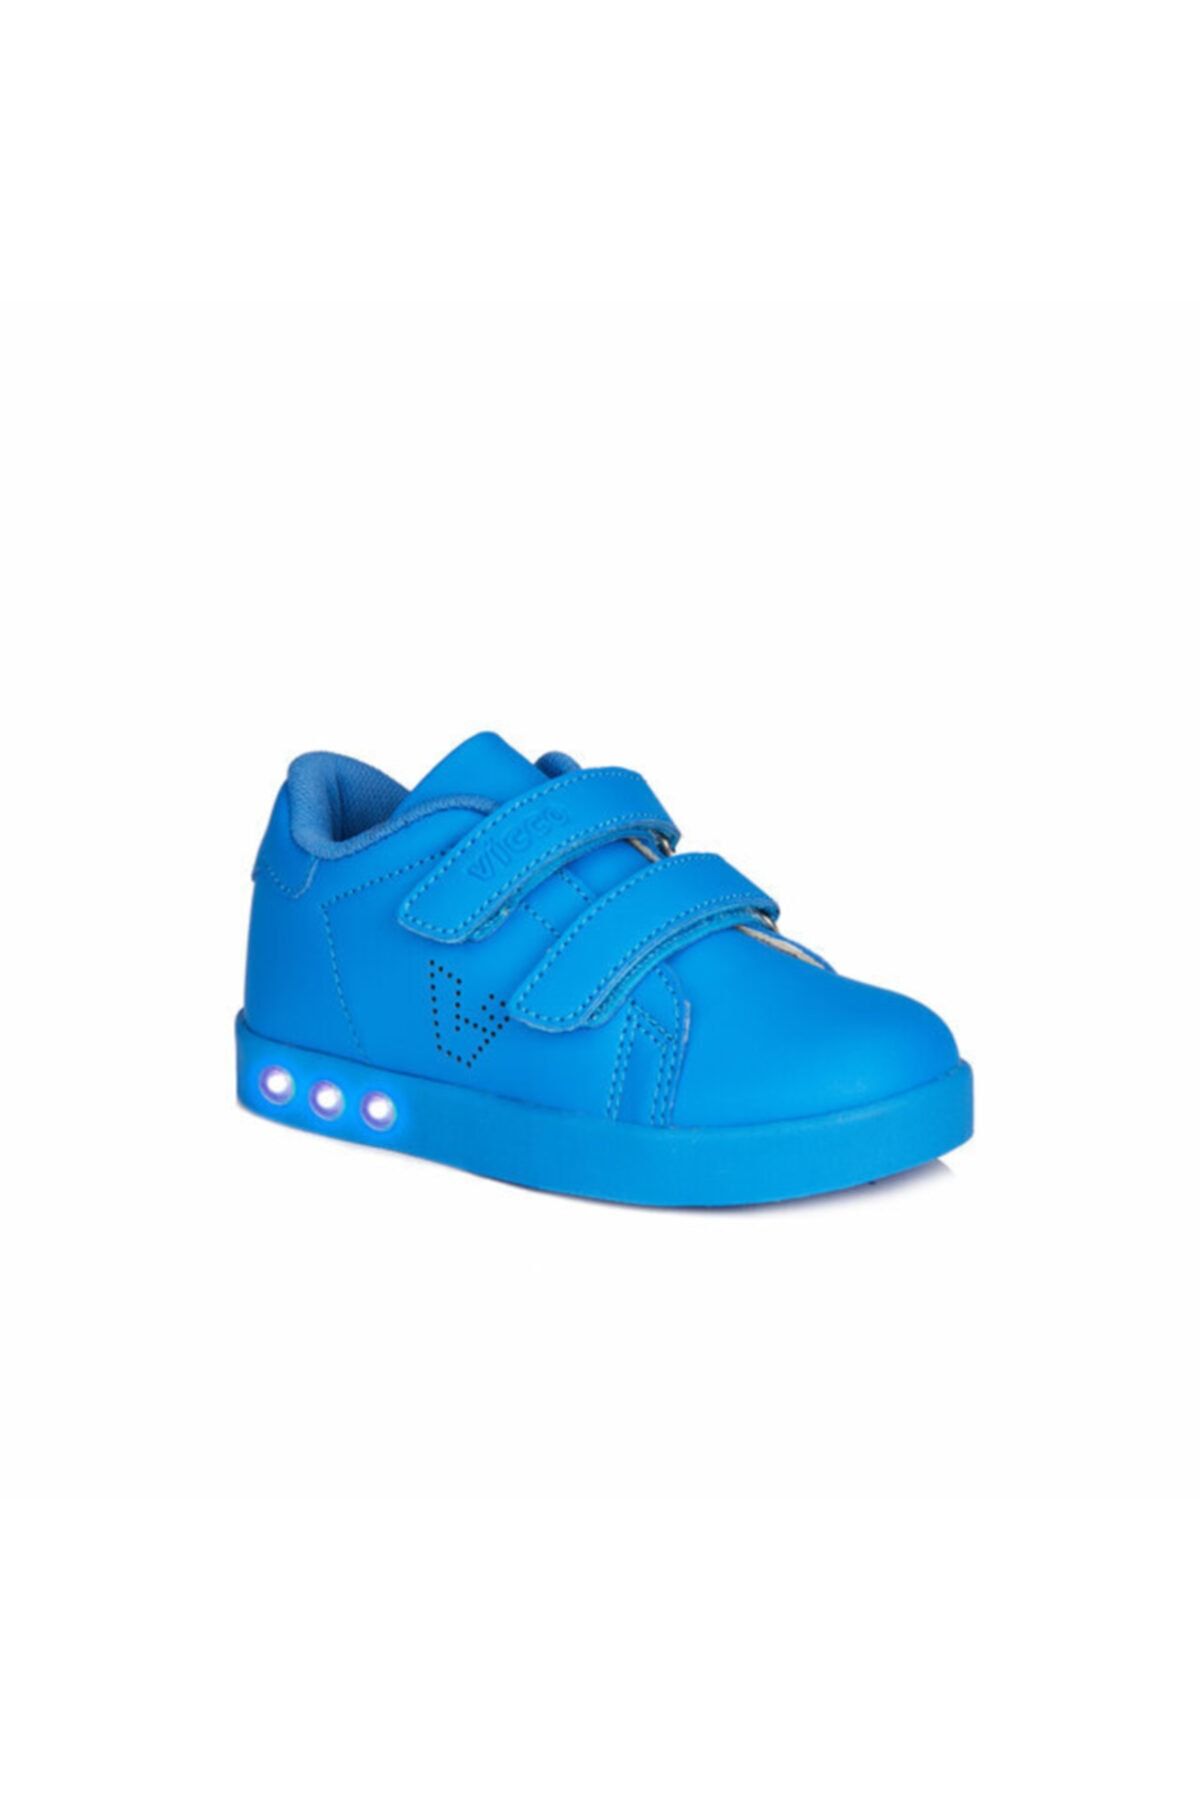 Vicco Oyo Saks Renk Unisex Çocuk Sneaker Spor Ayakkabı